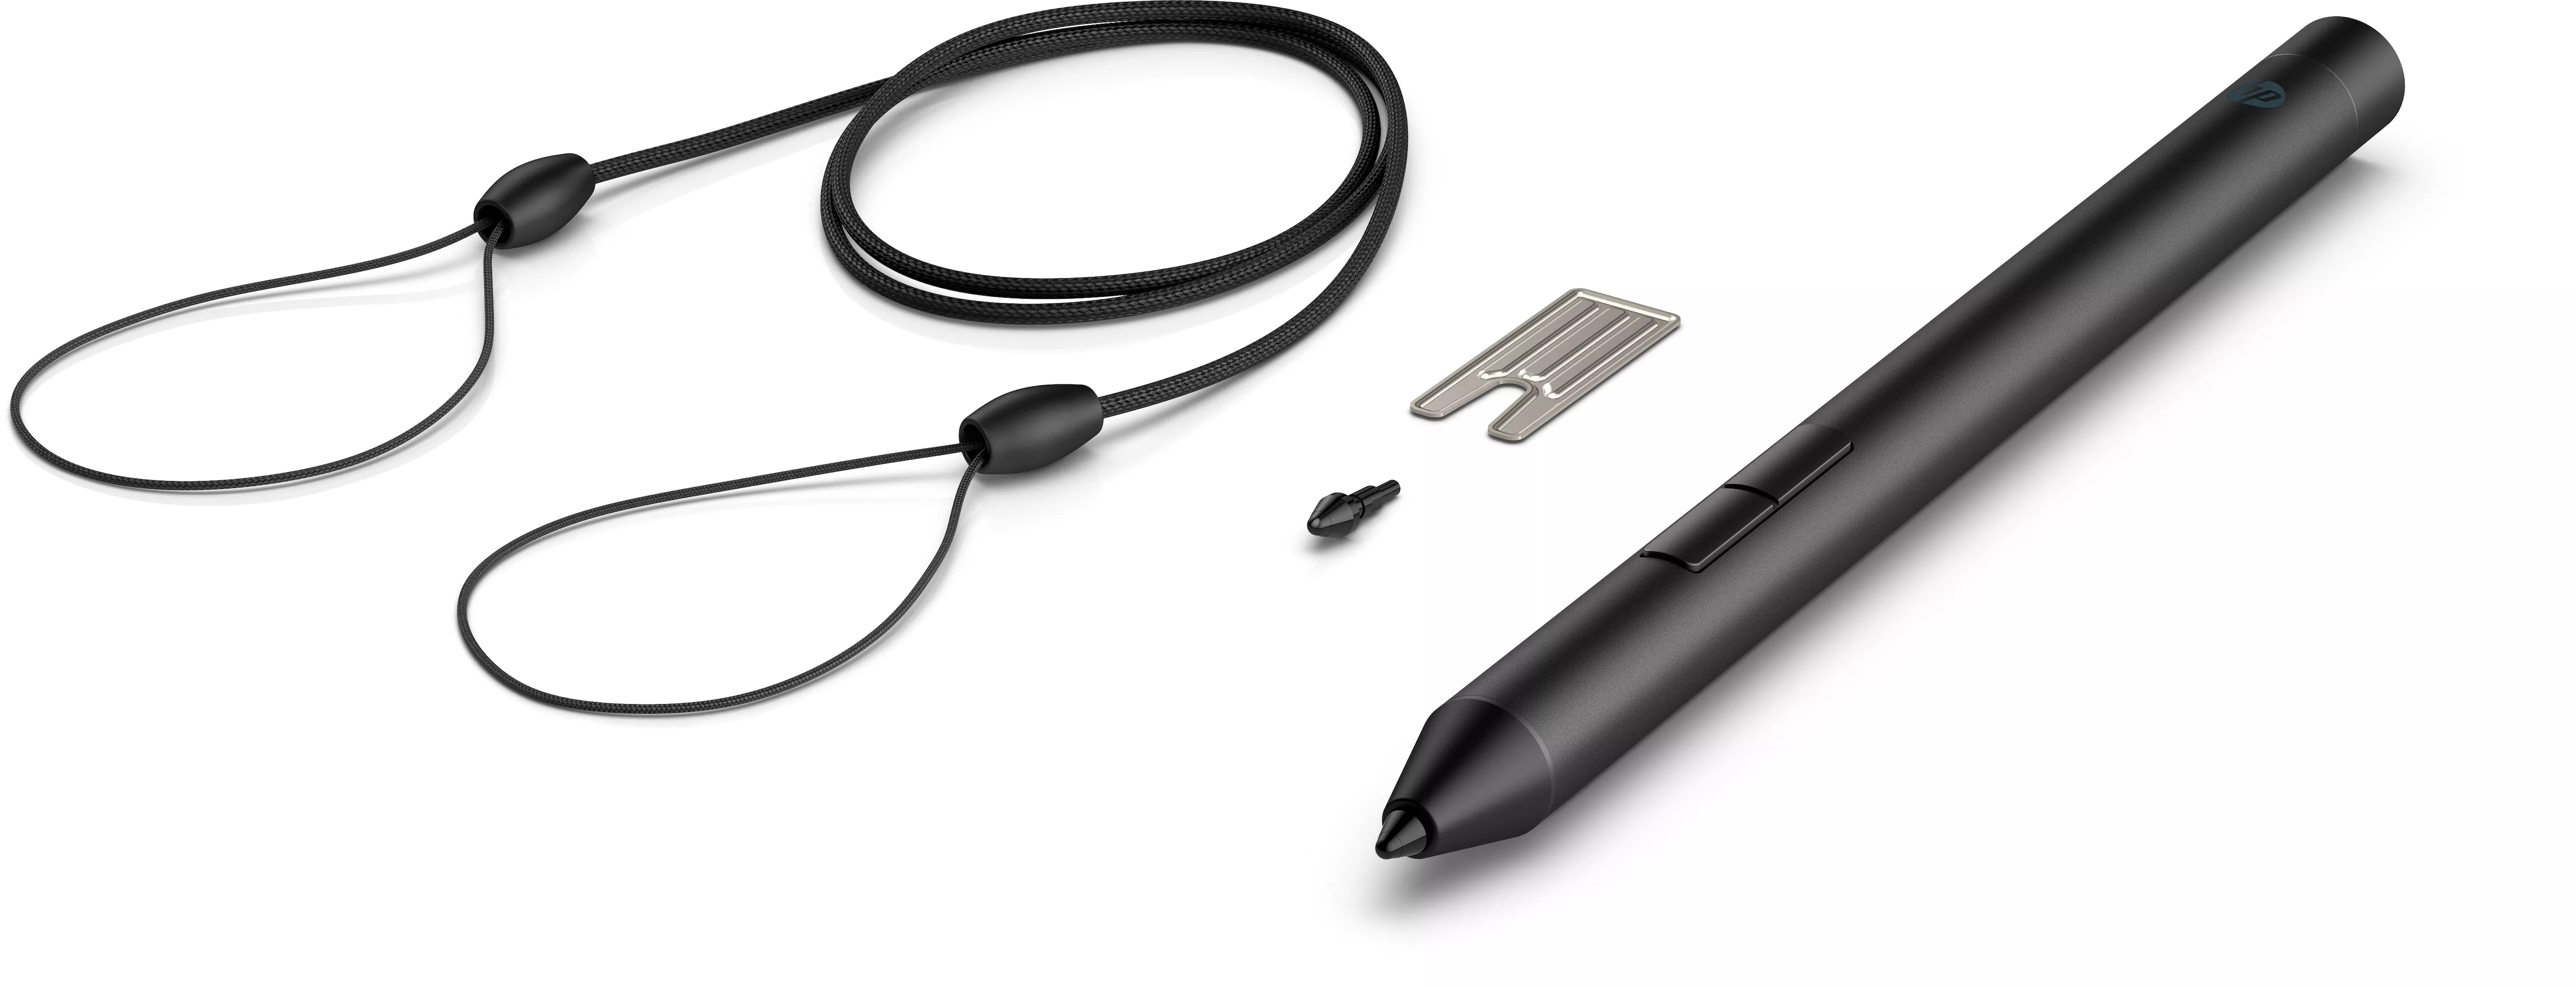 Vente HP Pro Pen HP au meilleur prix - visuel 4